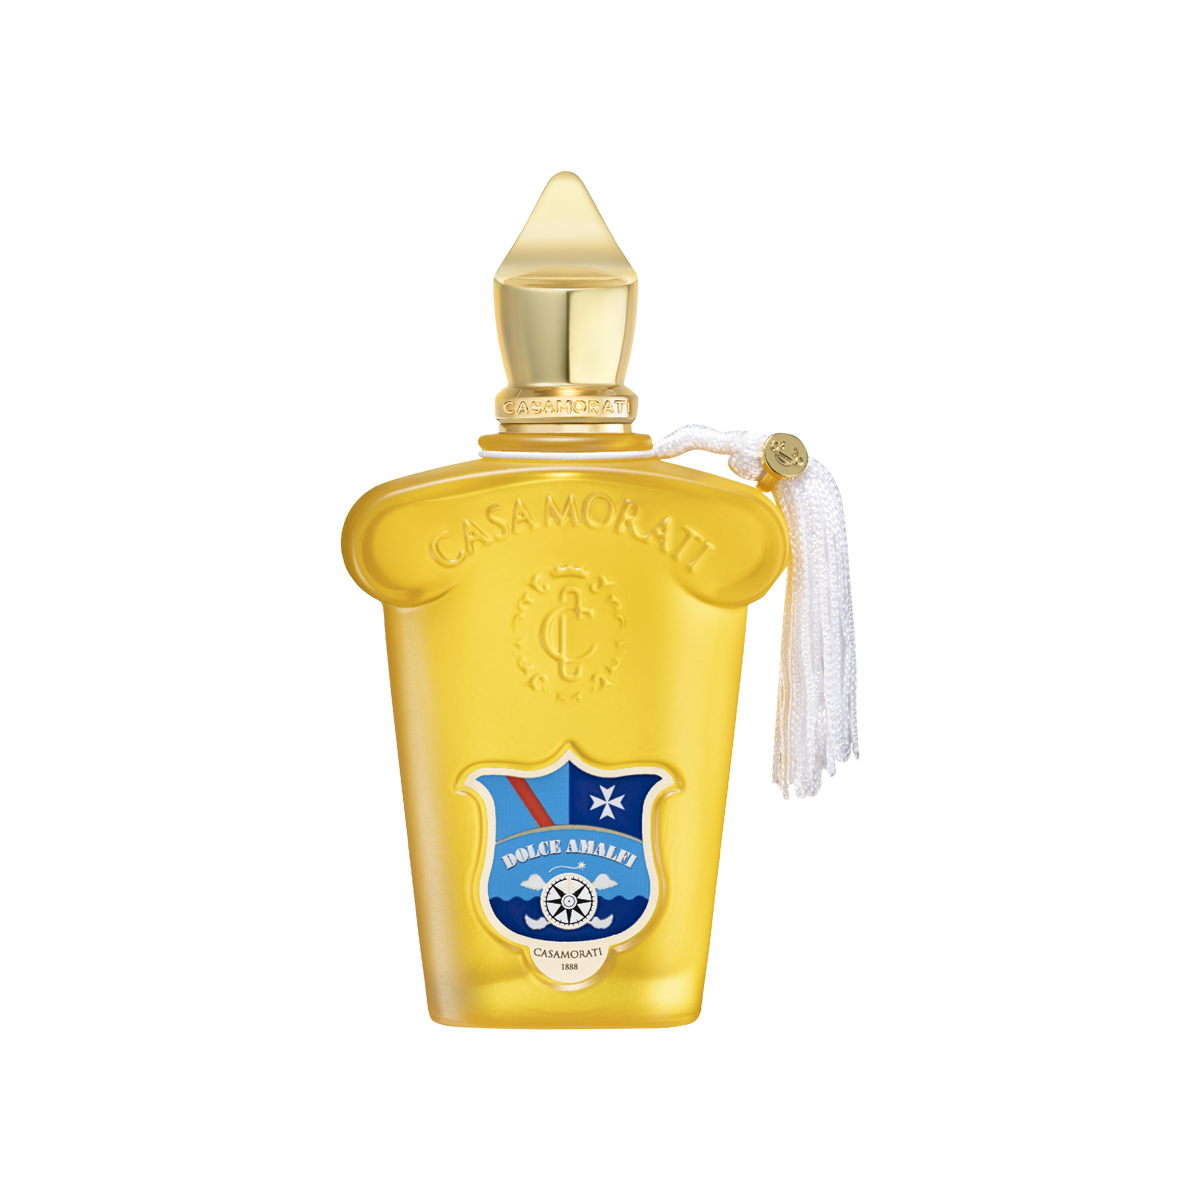 Casamorati - Dolce Amalfi Eau de Parfum